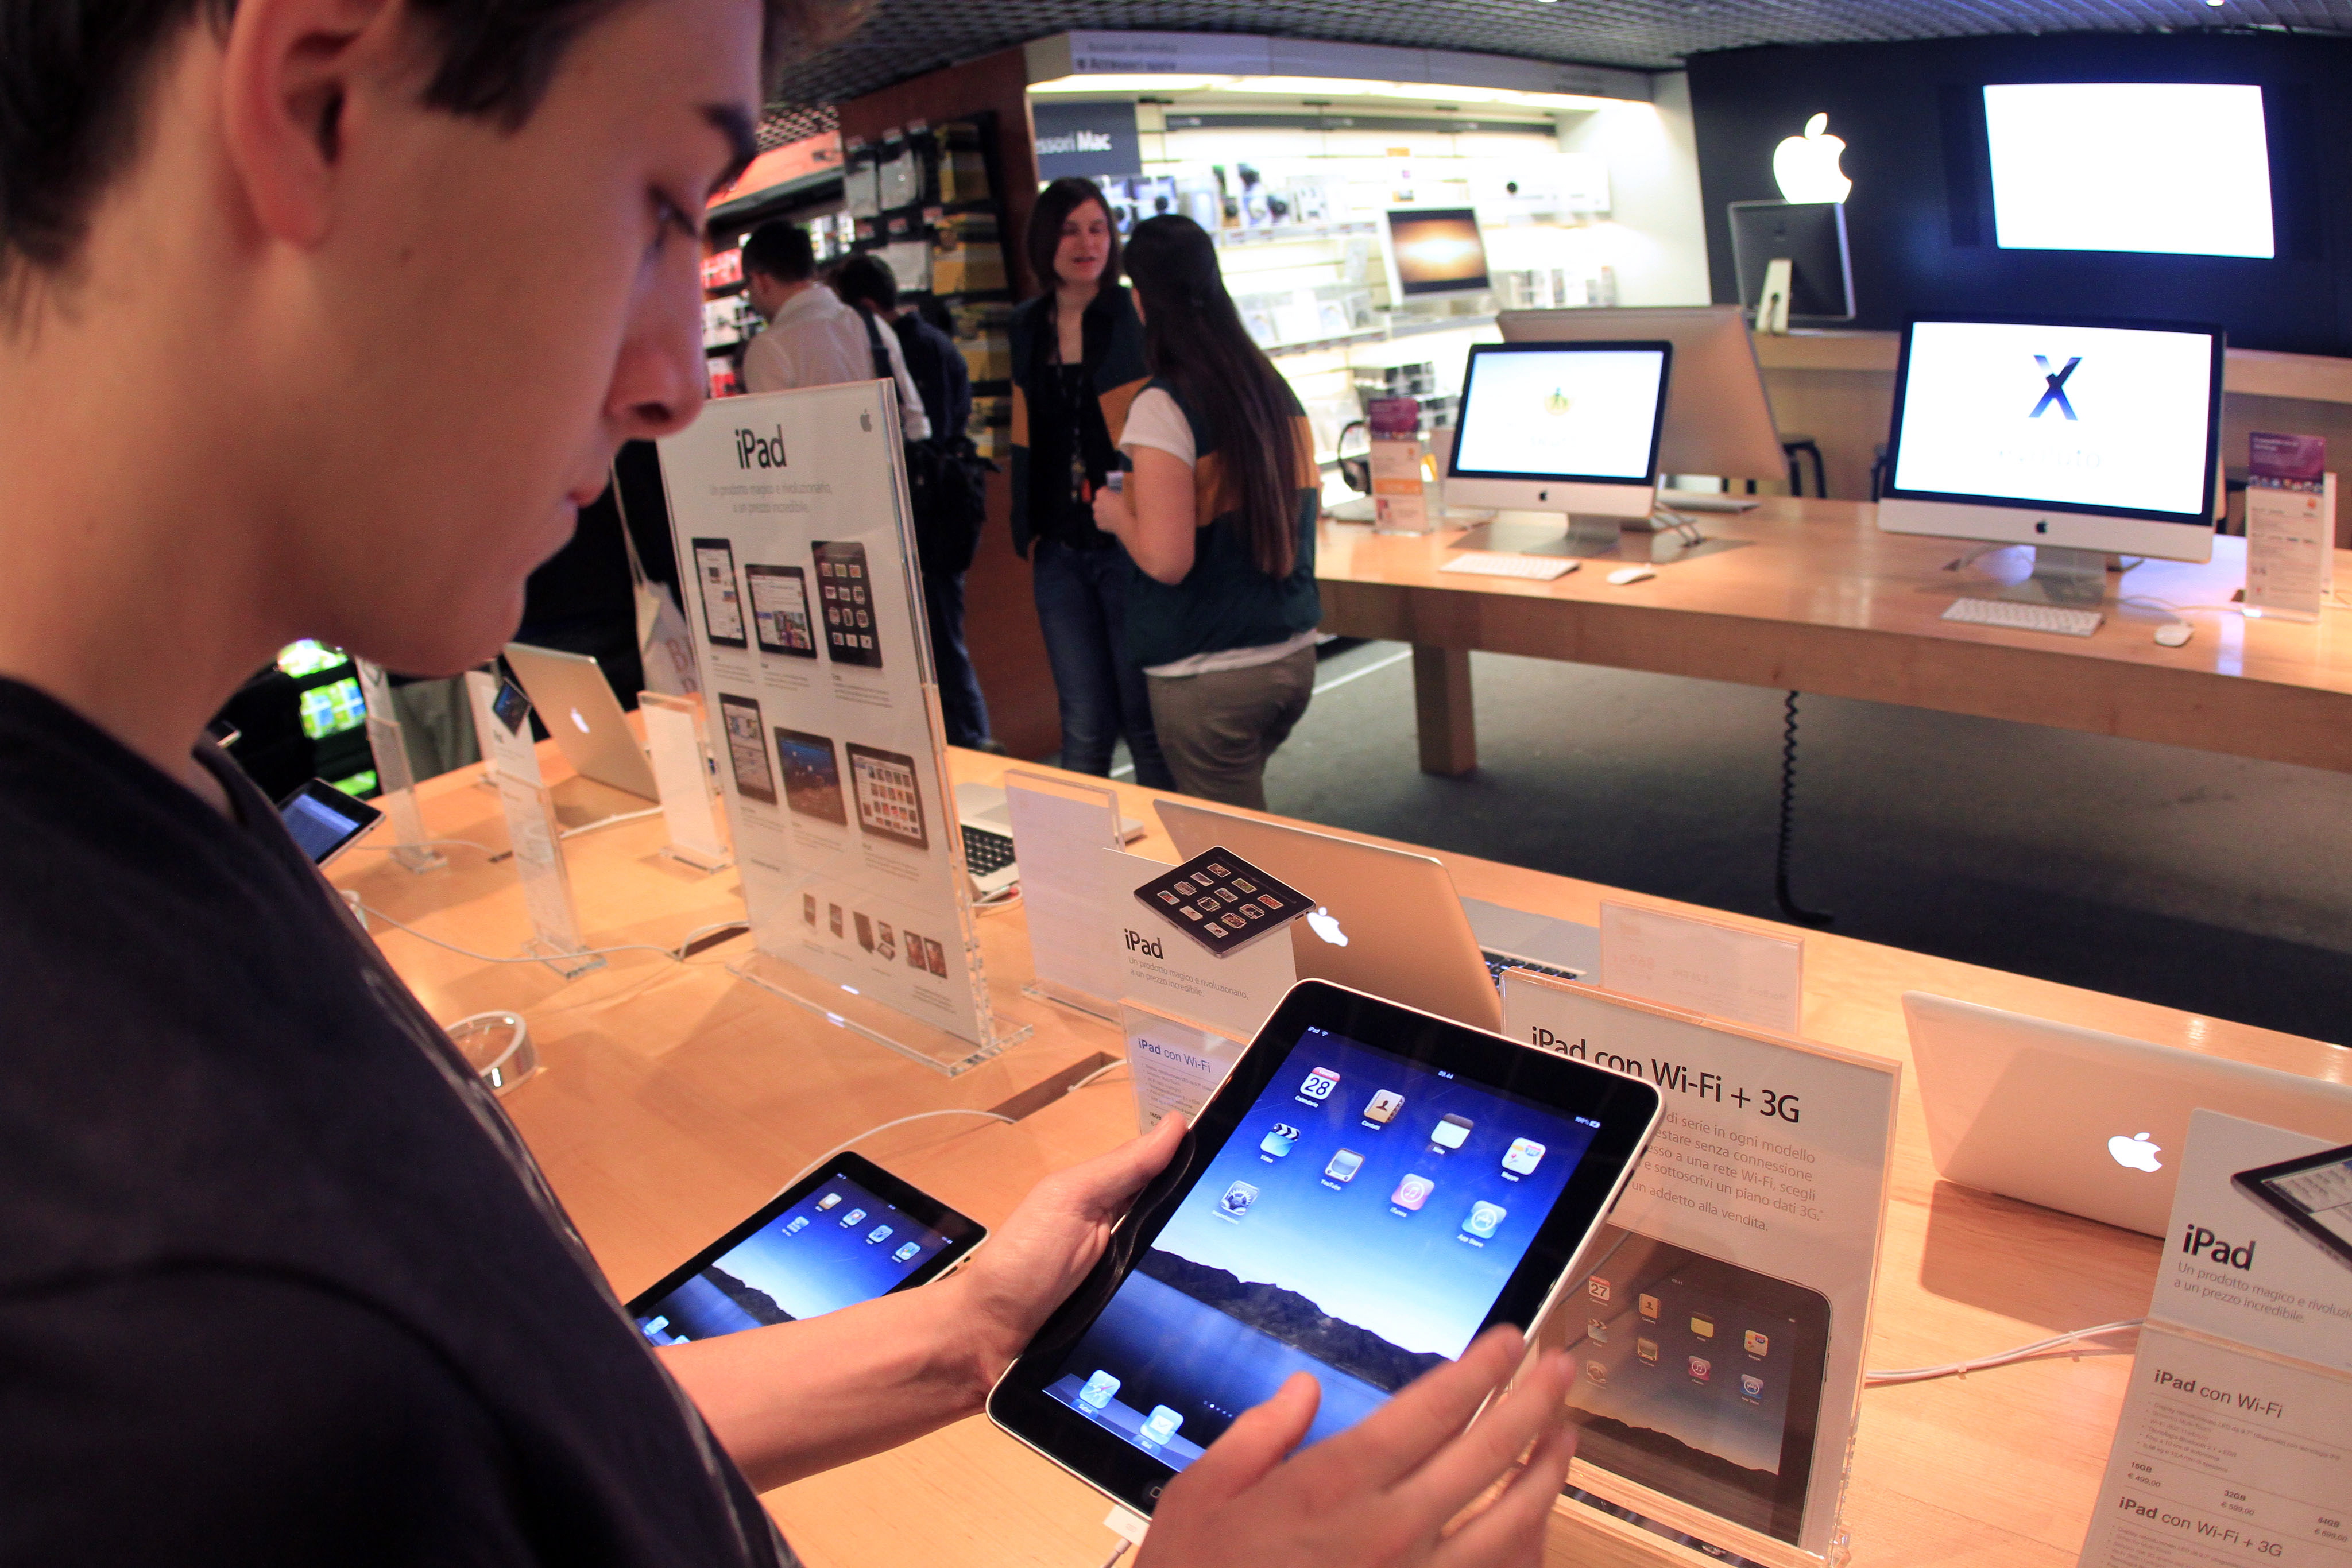 Apple's iPad at an Apple store in Milan, Italy. (Photo EPA/MATTEO BAZZI)